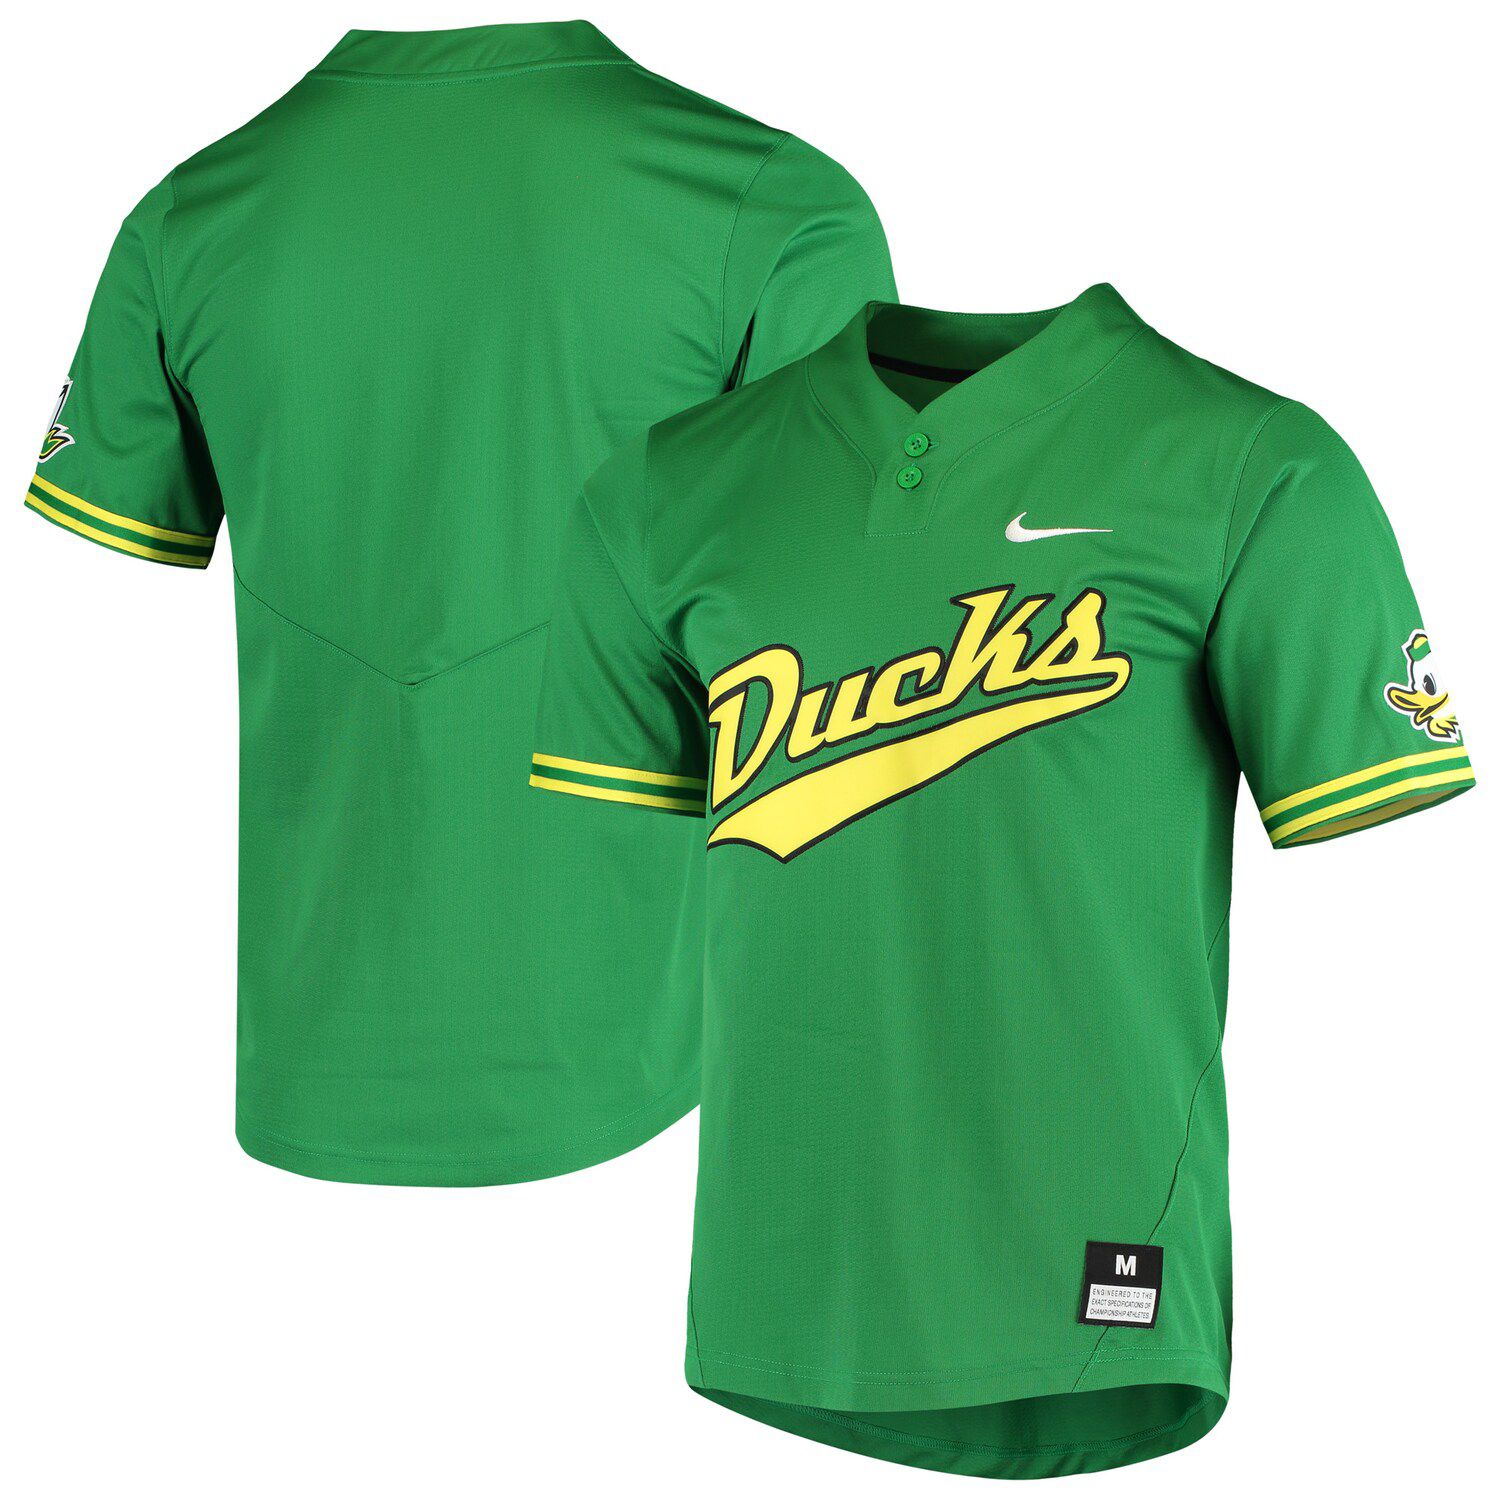 oregon ducks baseball uniforms